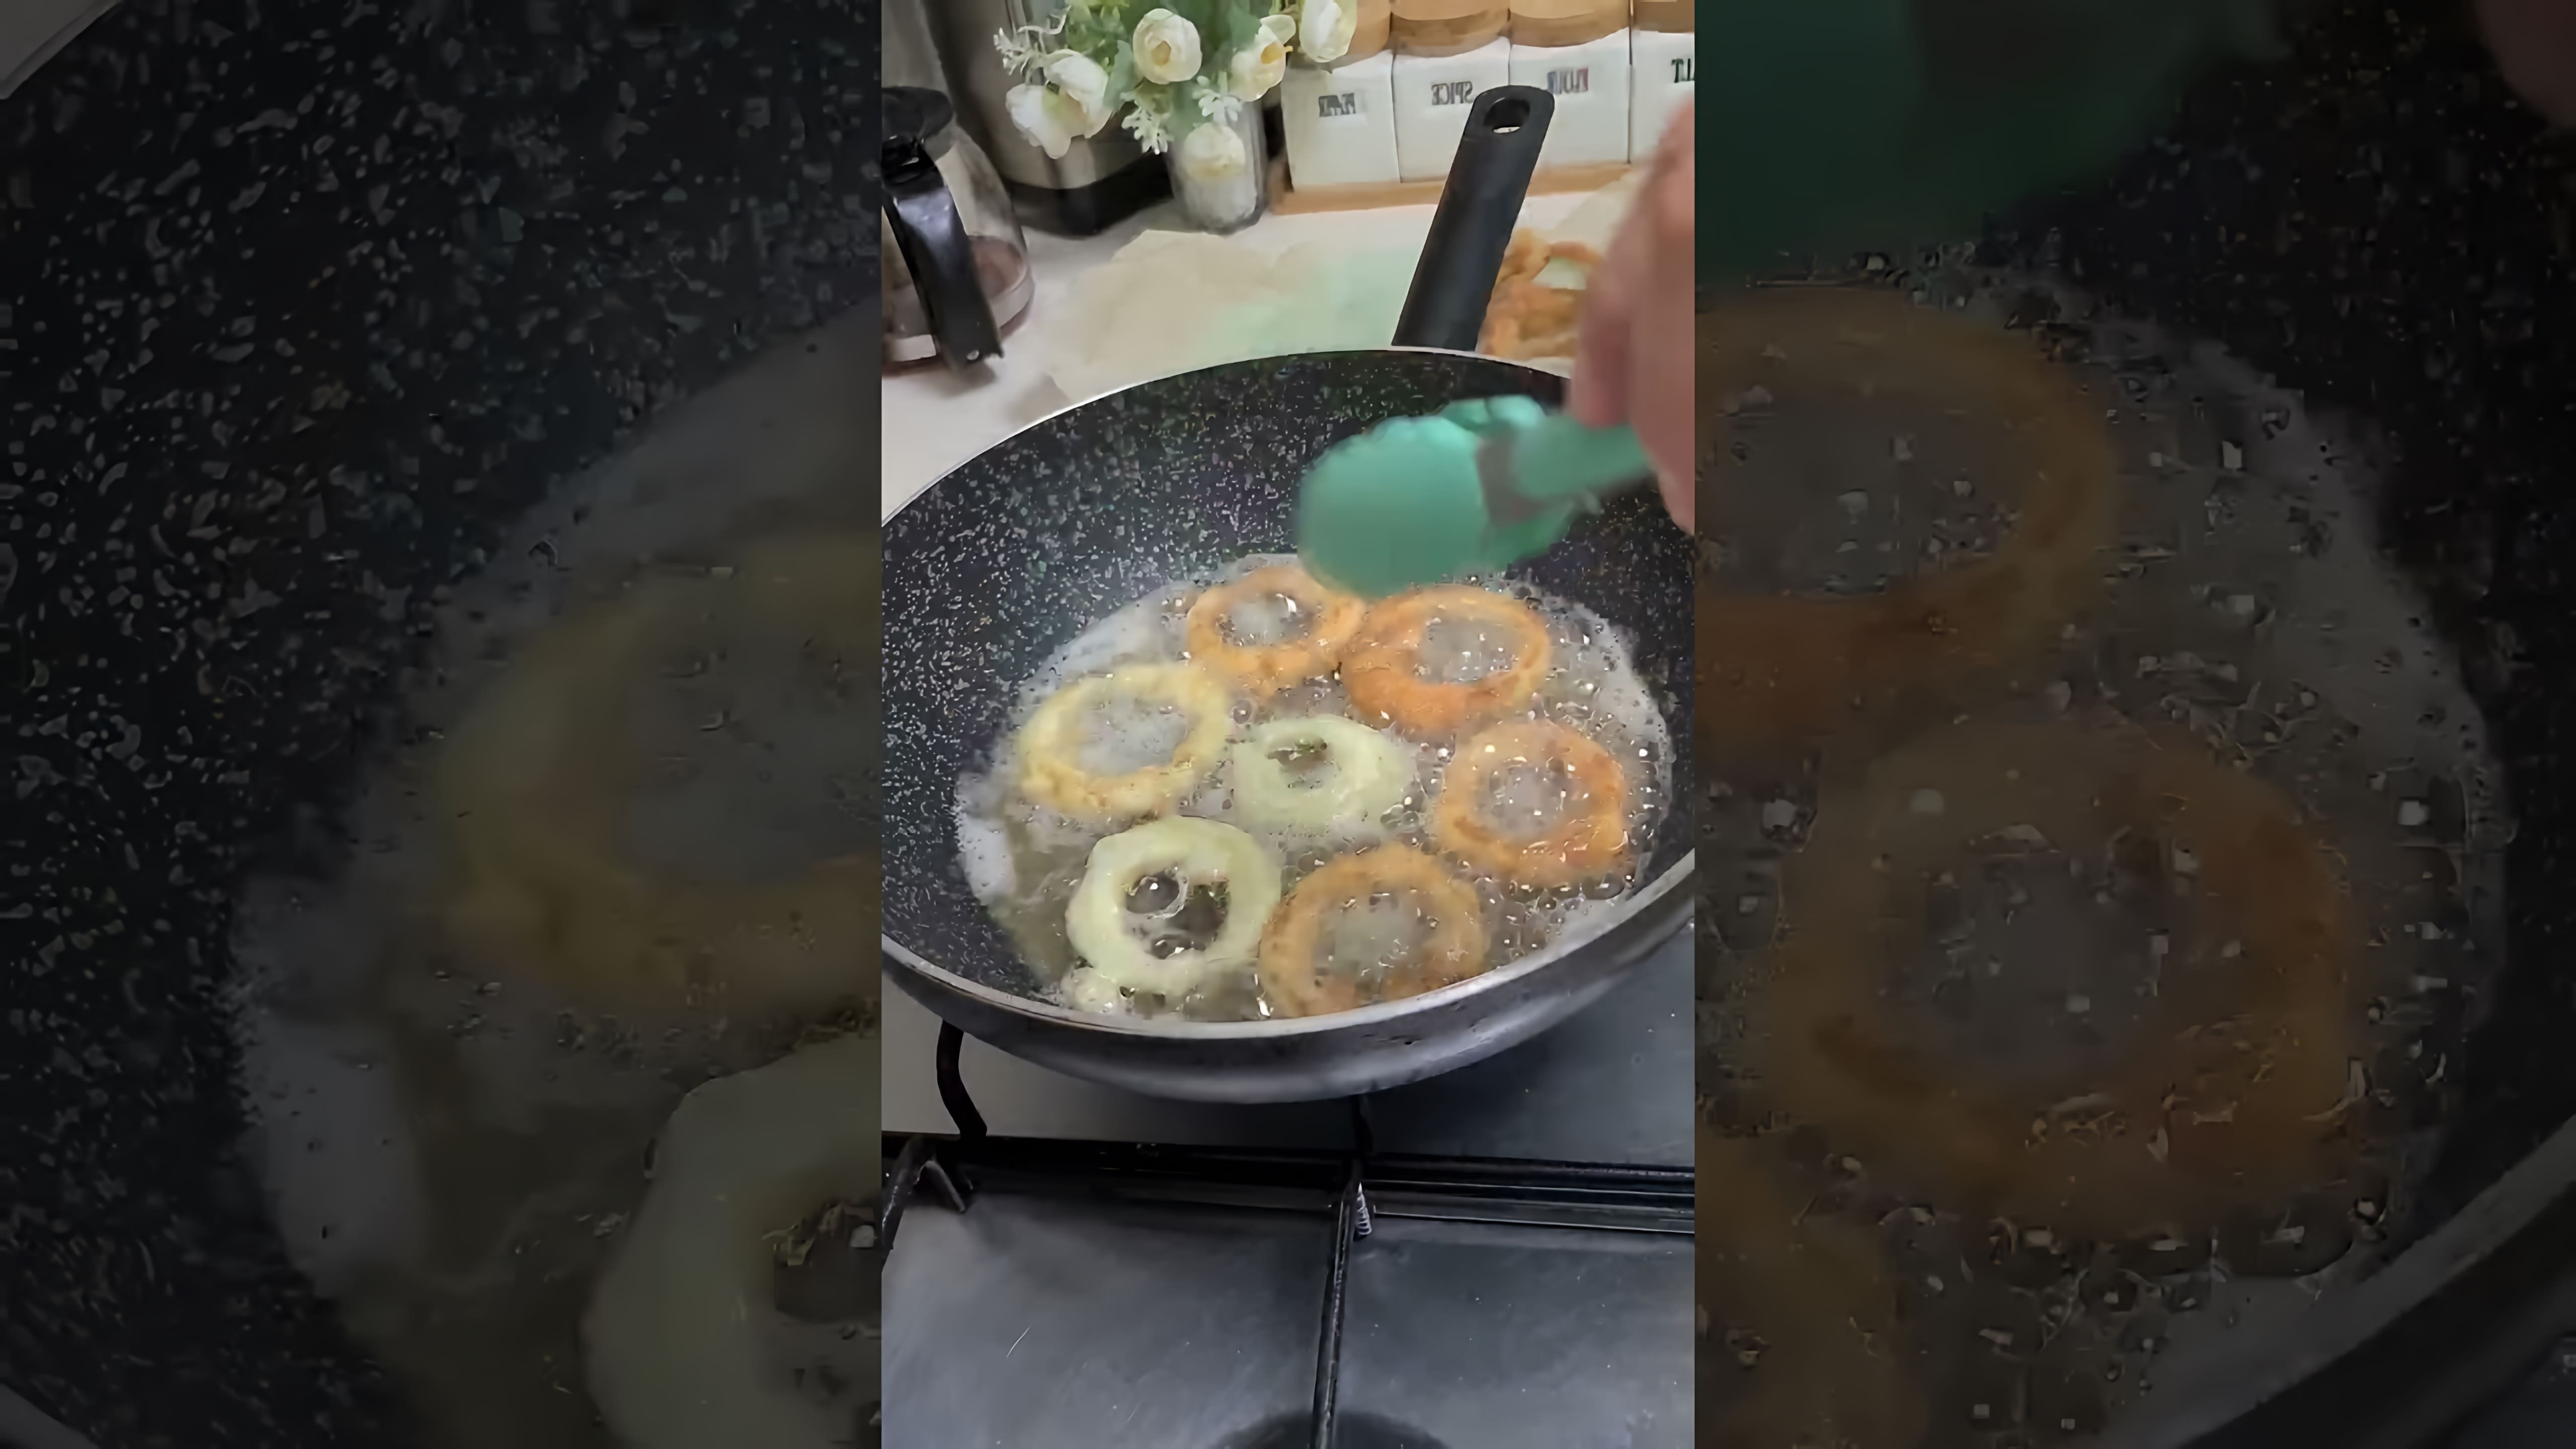 "Домашние Луковые кольца: рецепт на канале" - это видео-ролик, который предлагает простой и вкусный рецепт приготовления луковых колец